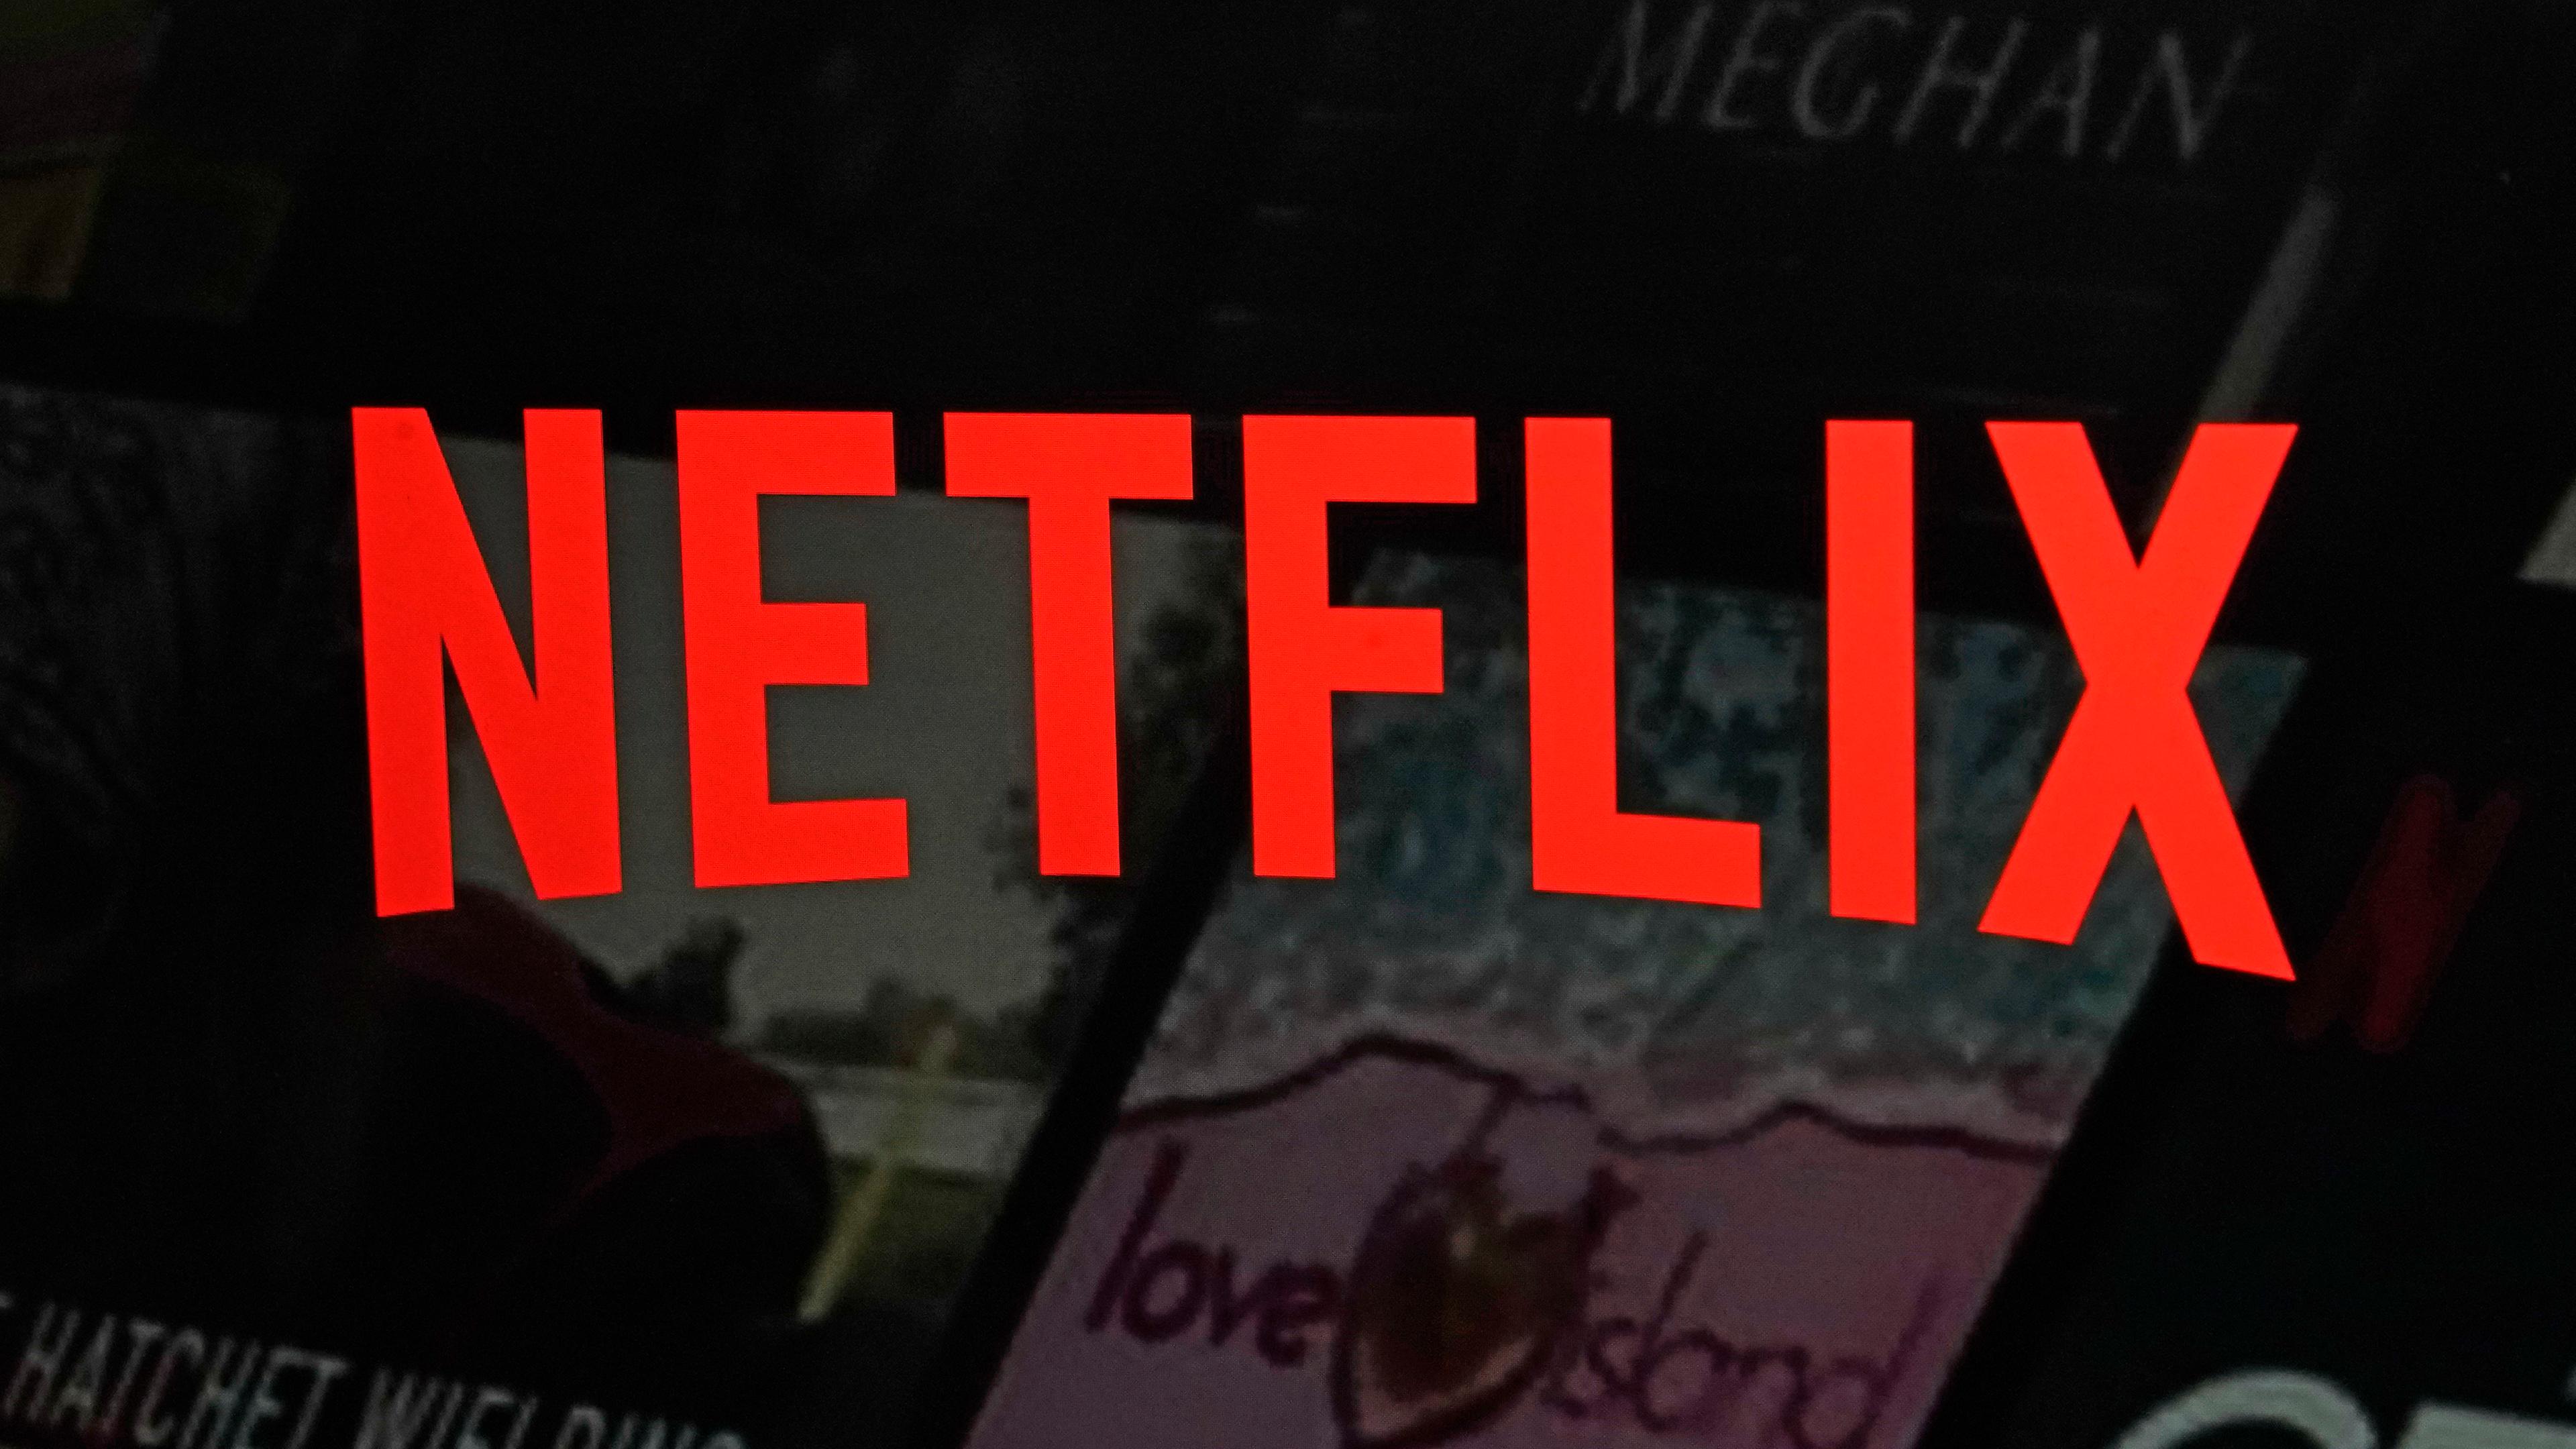 Archiv: Das Netflix logo